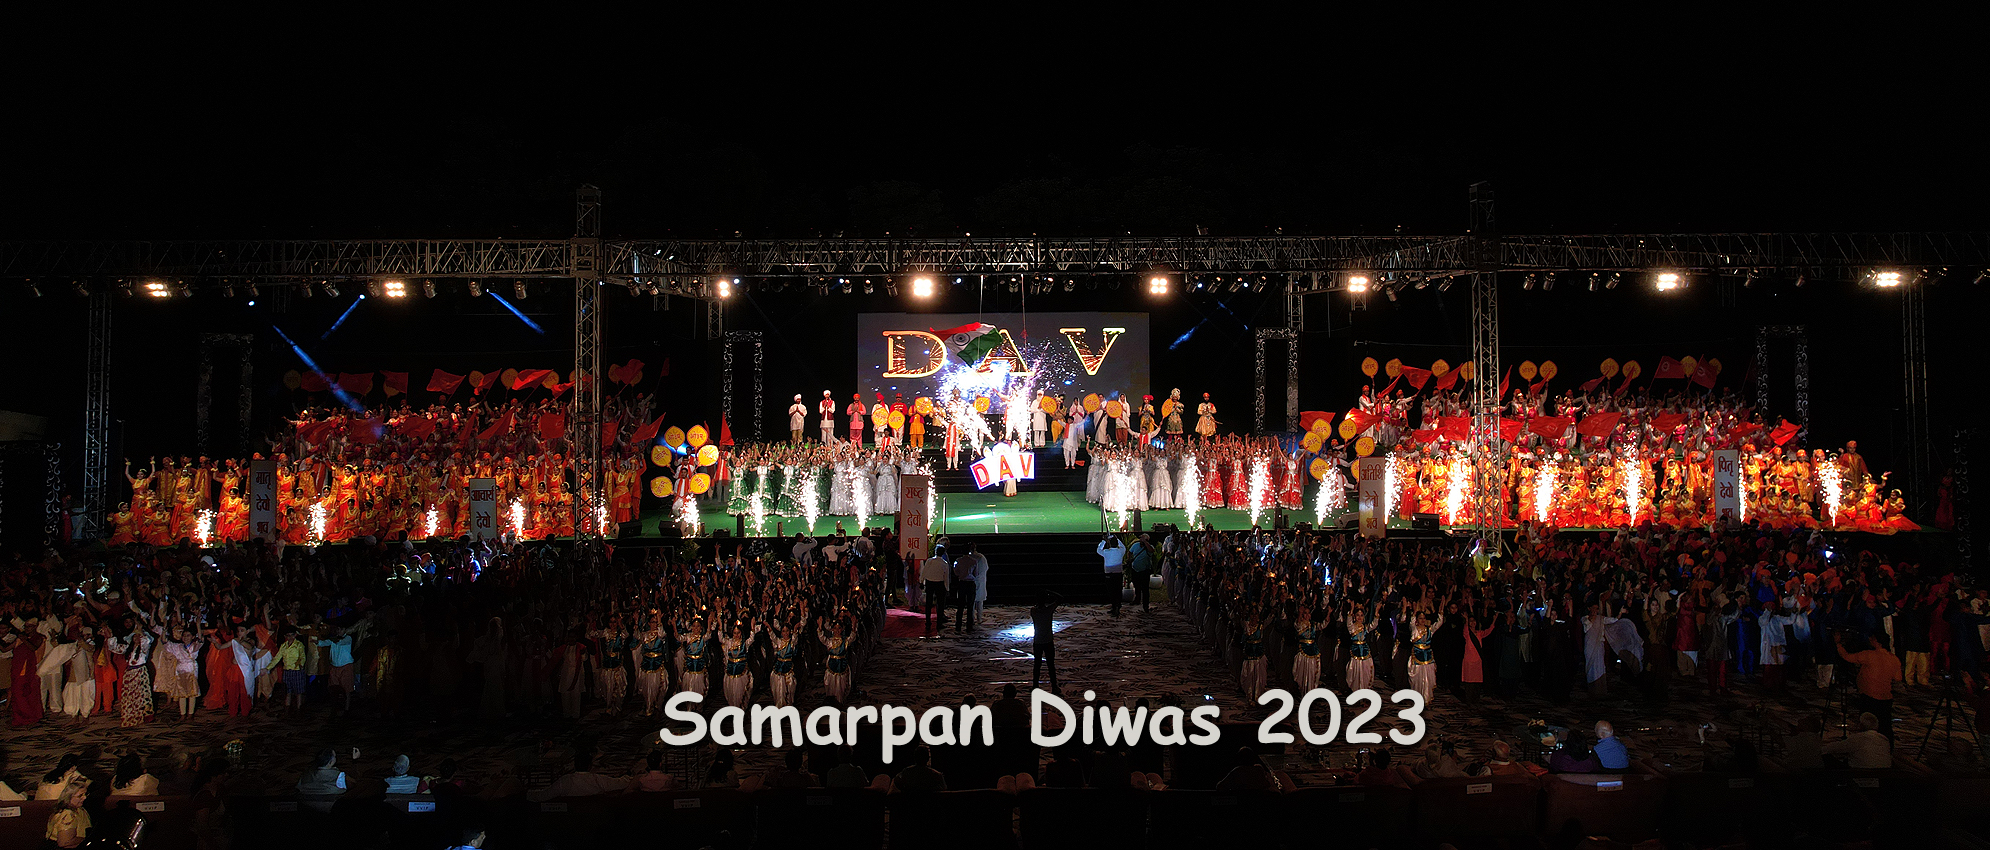 Samarpan Diwas 2023